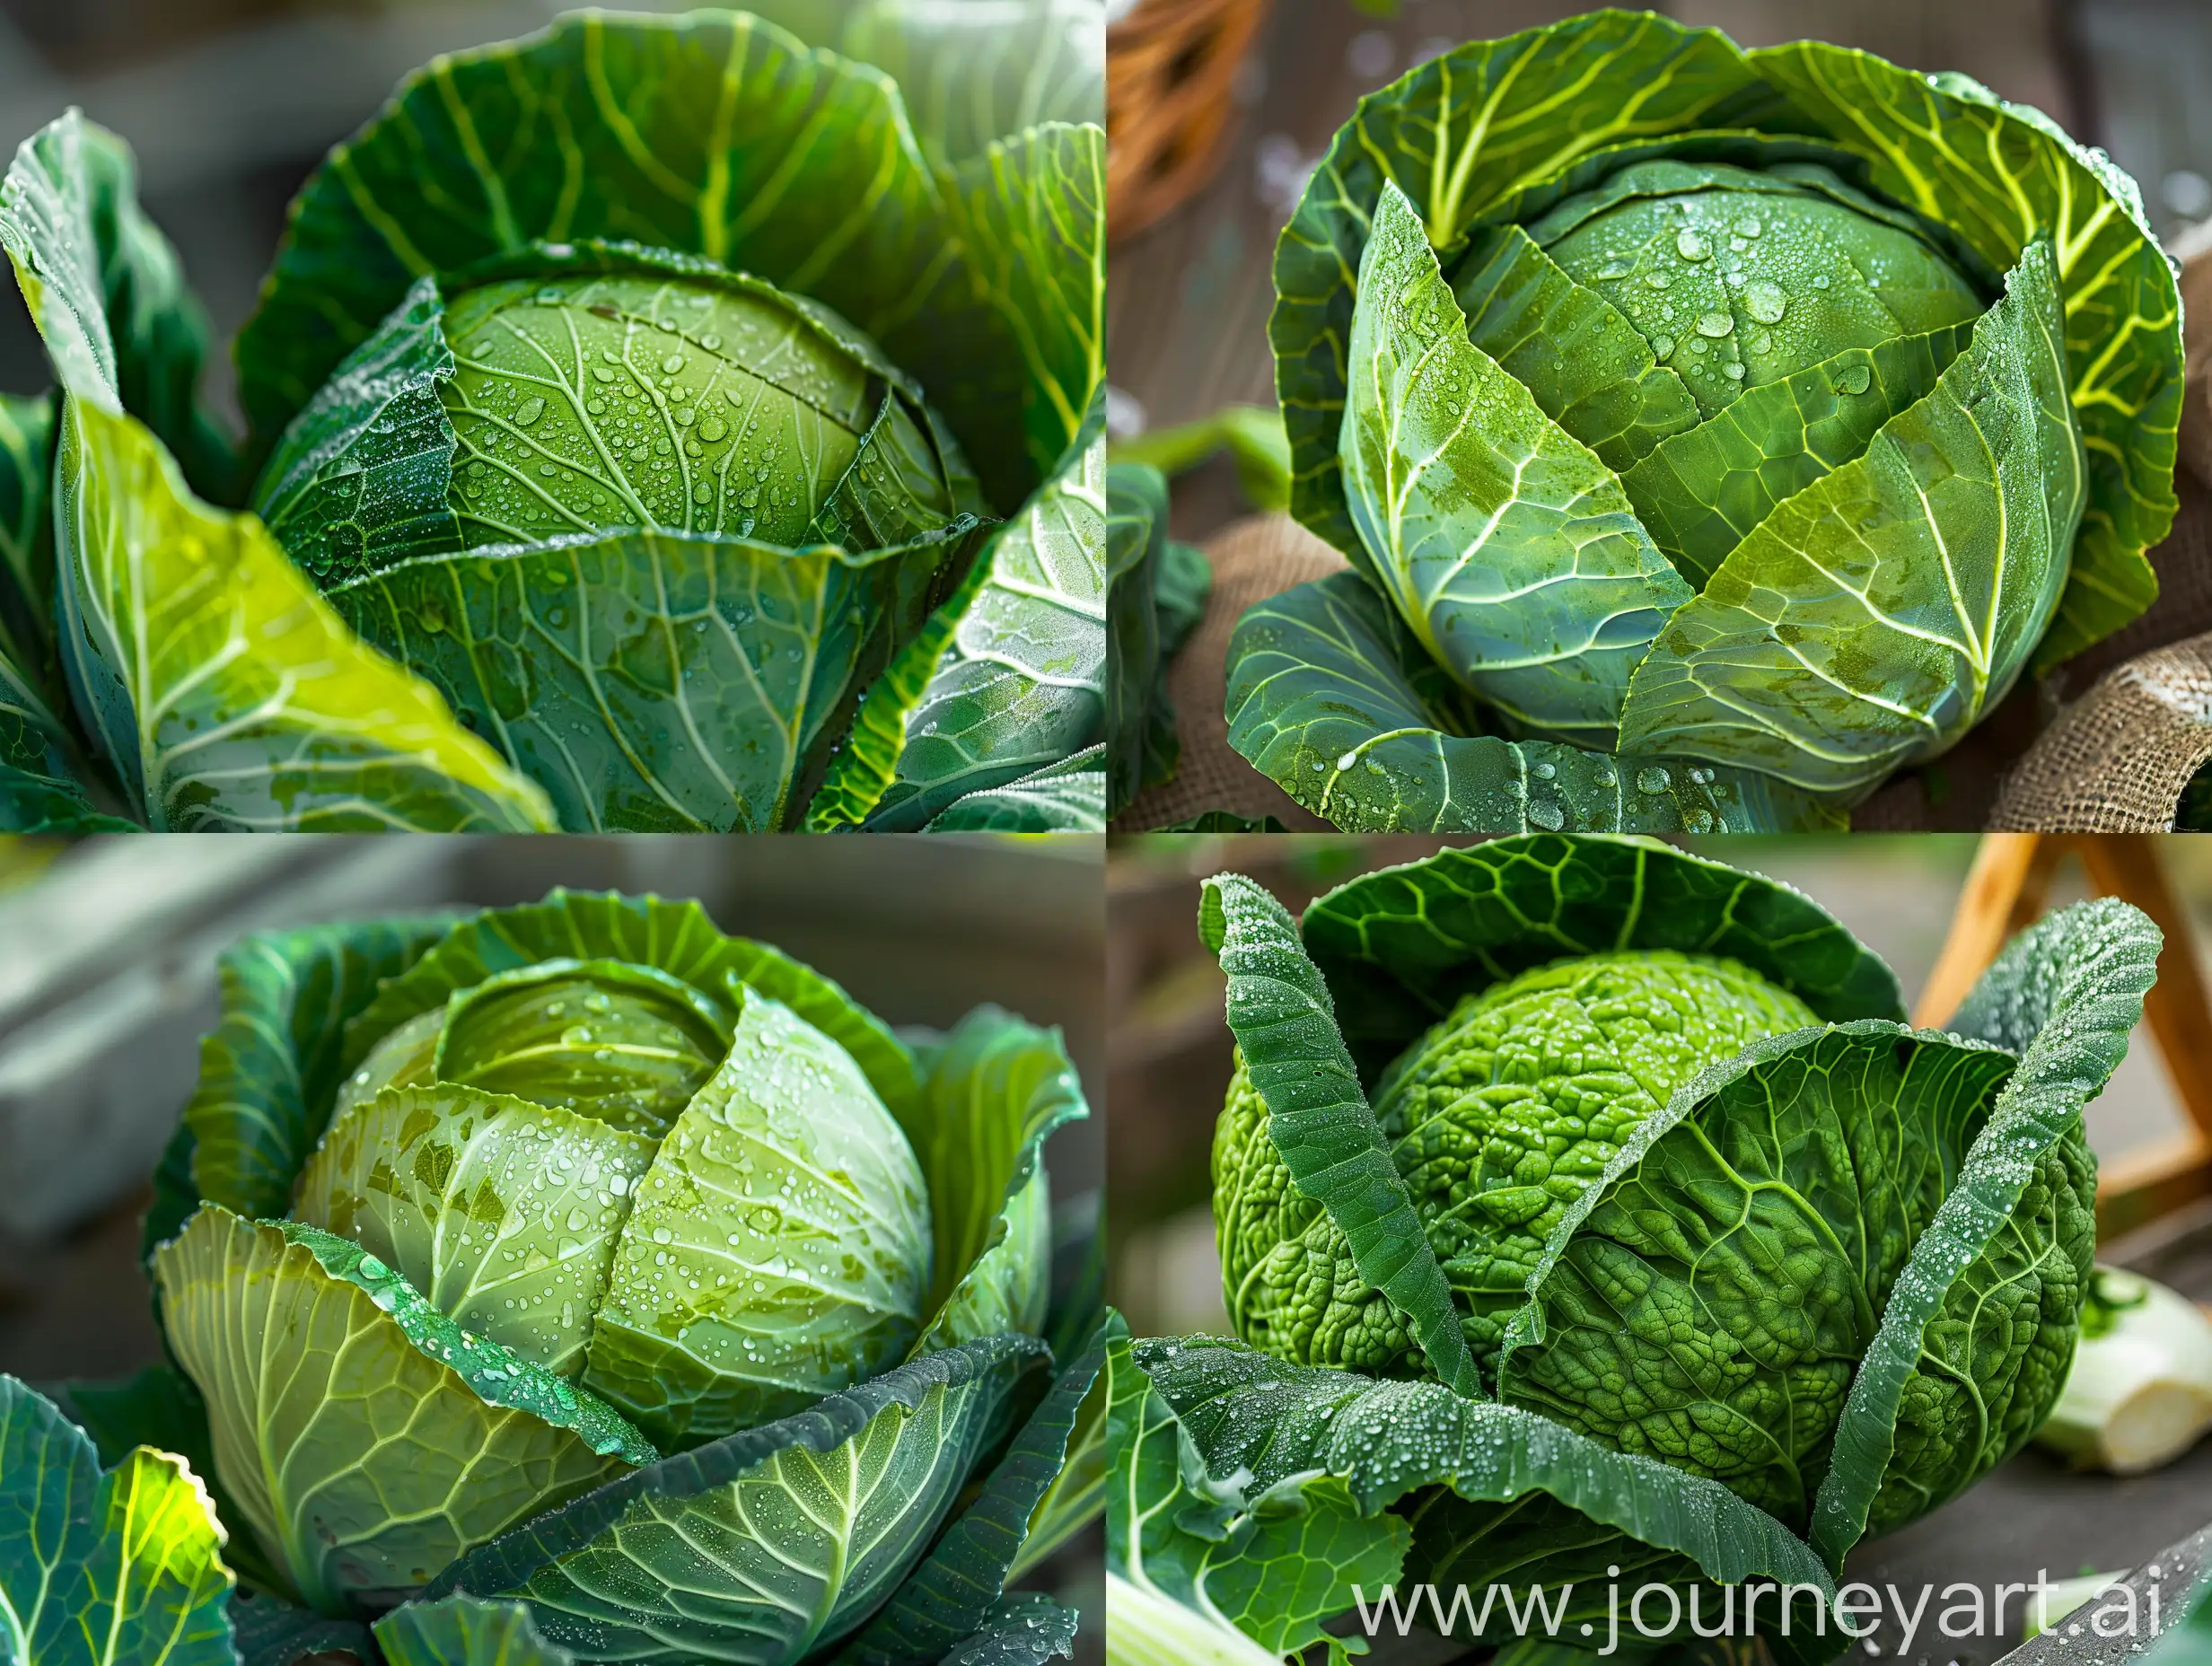 Fresh-Dewy-Cabbage-Head-Organic-Farming-Beauty